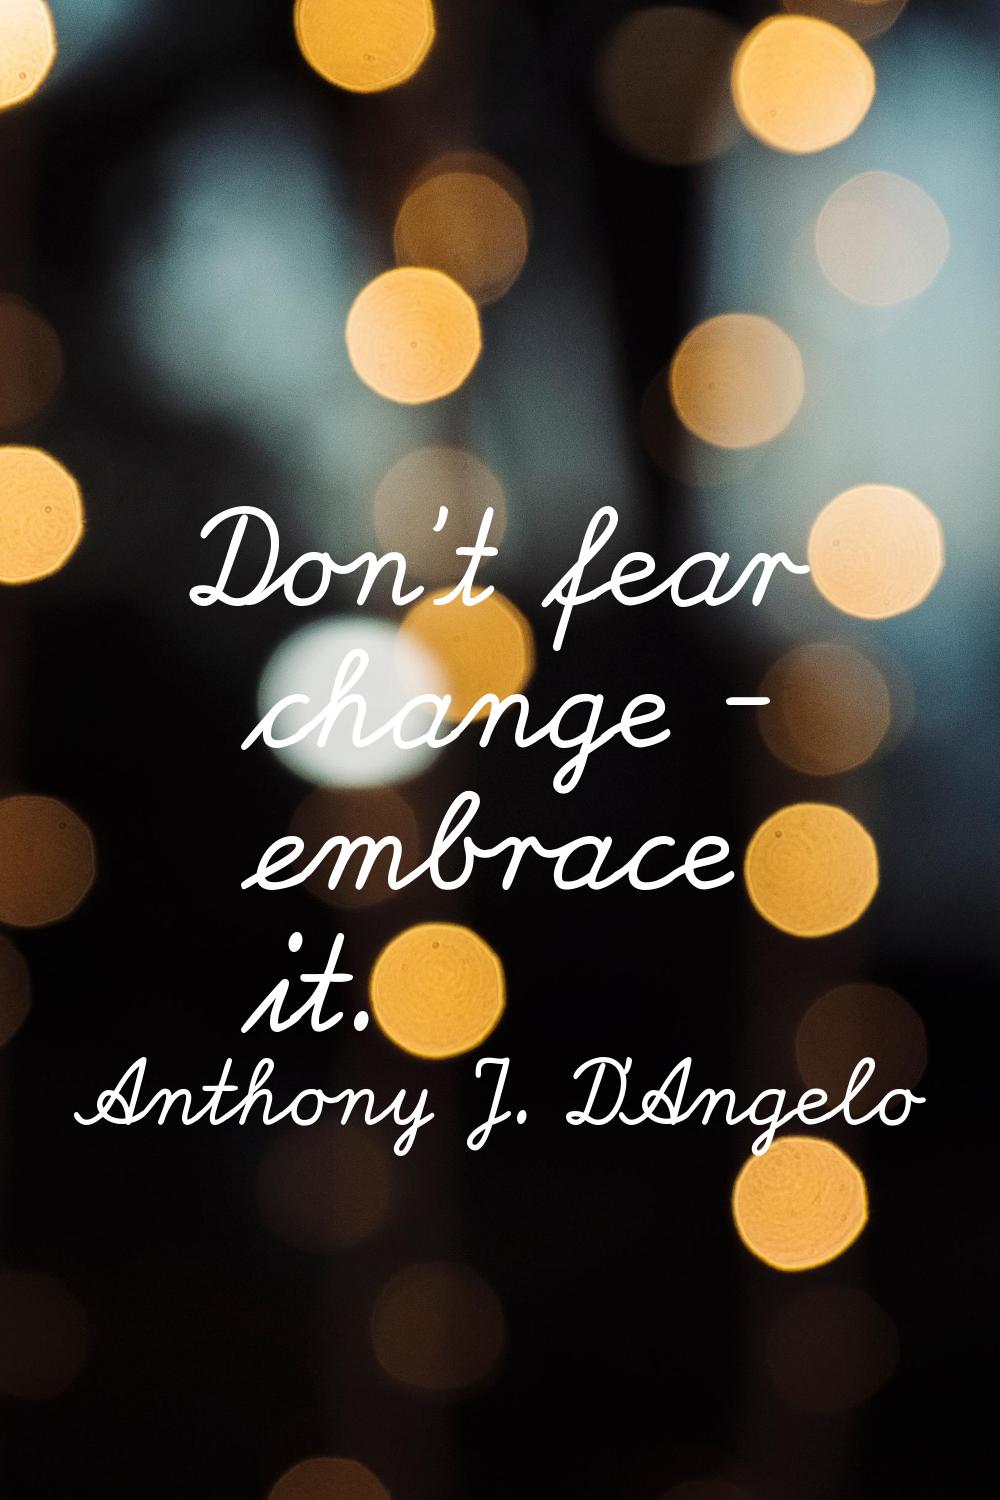 Don't fear change - embrace it.